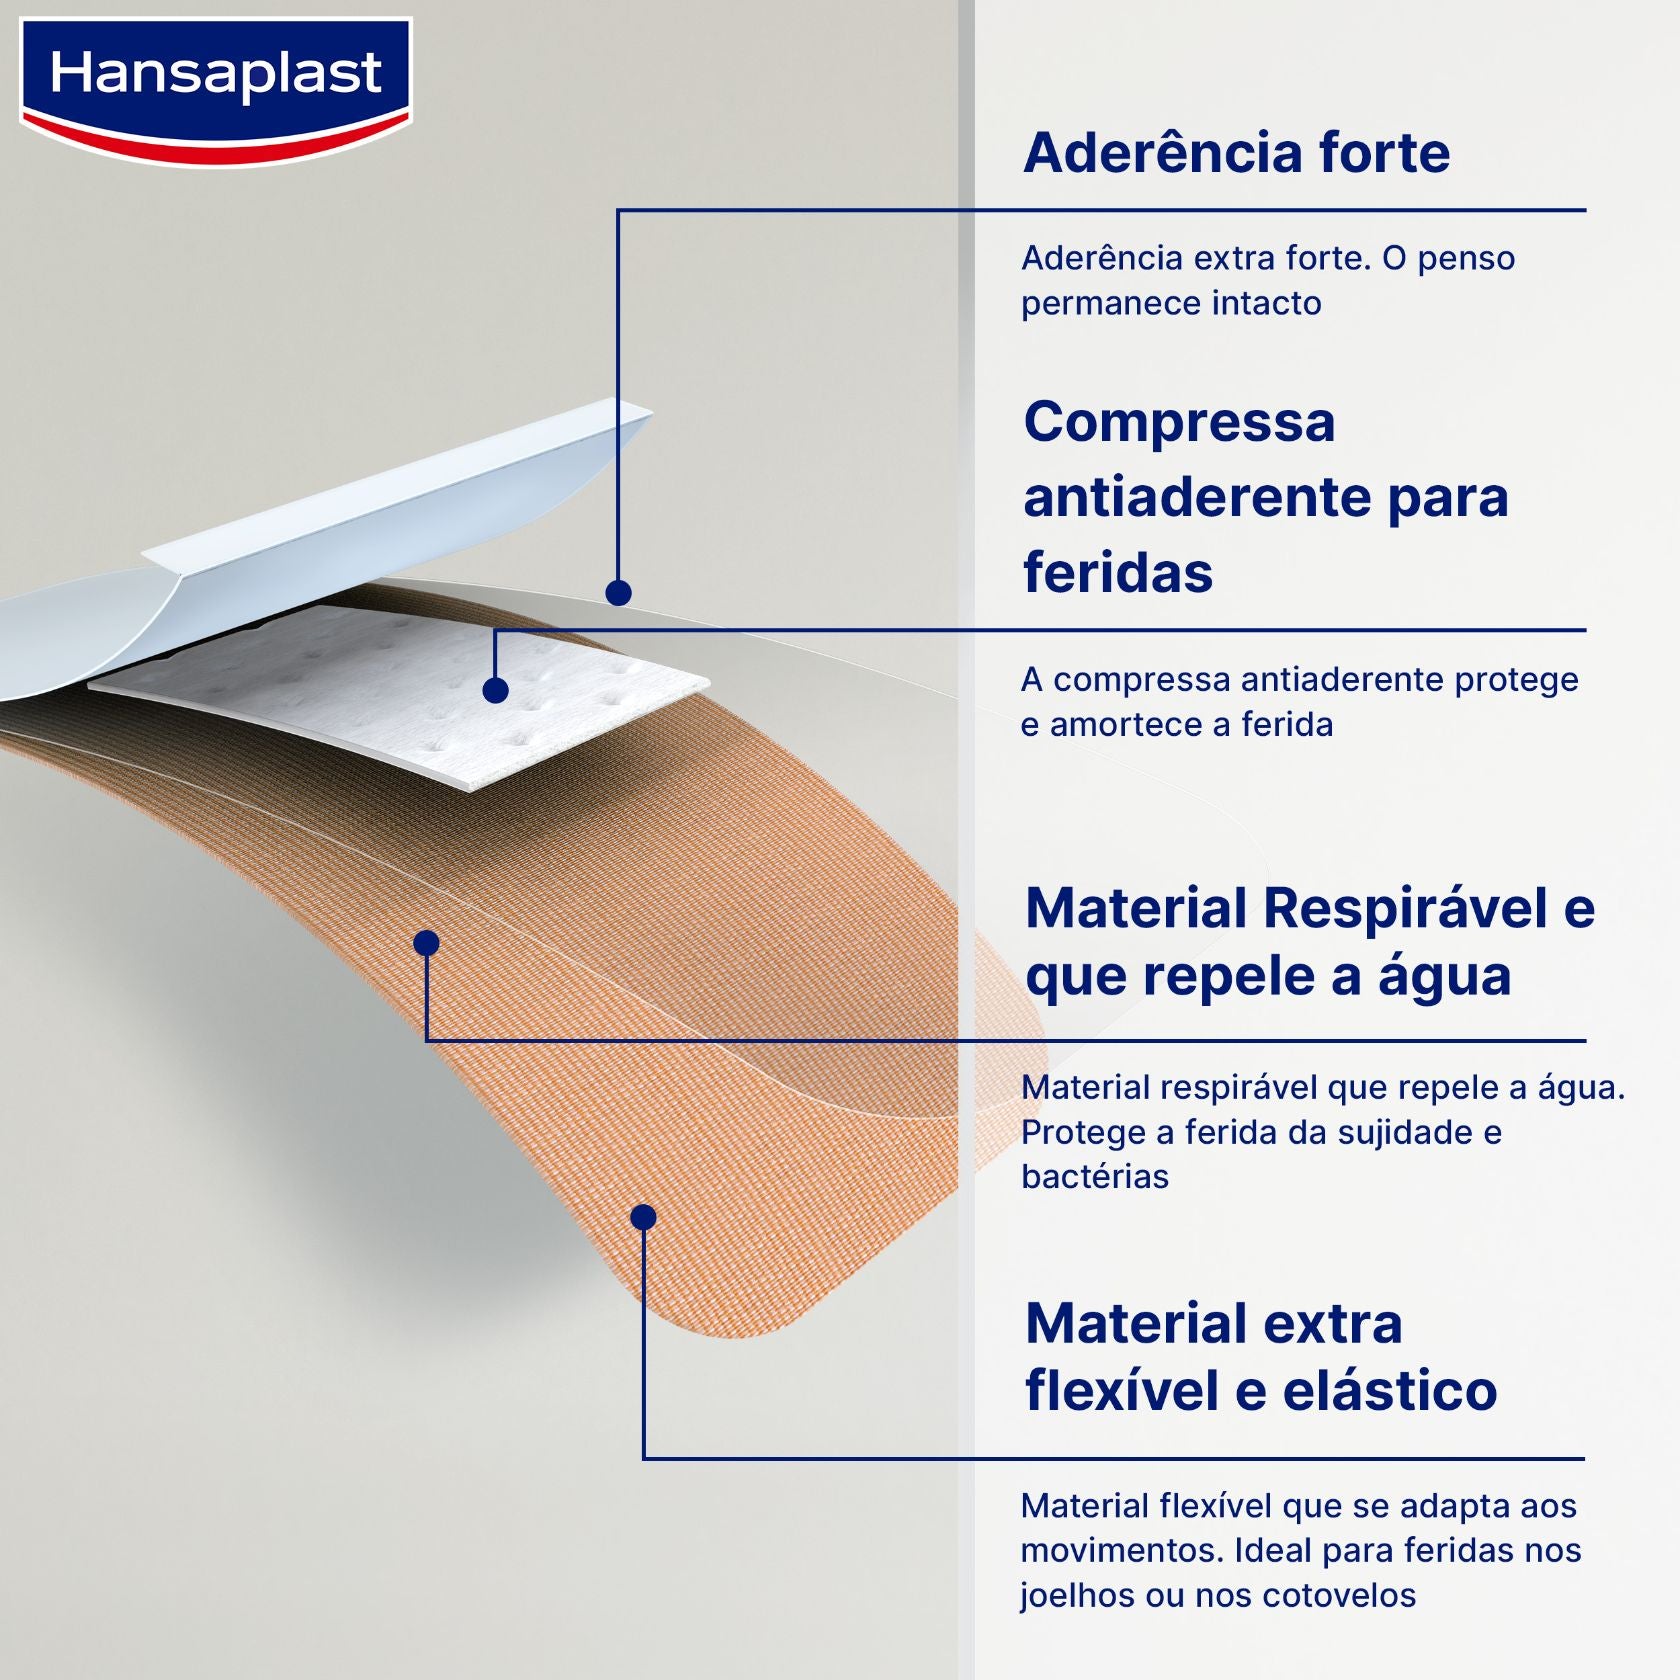 Hansaplast Fingertip Elastic Extra Flexible Water Resistant Plasters x10